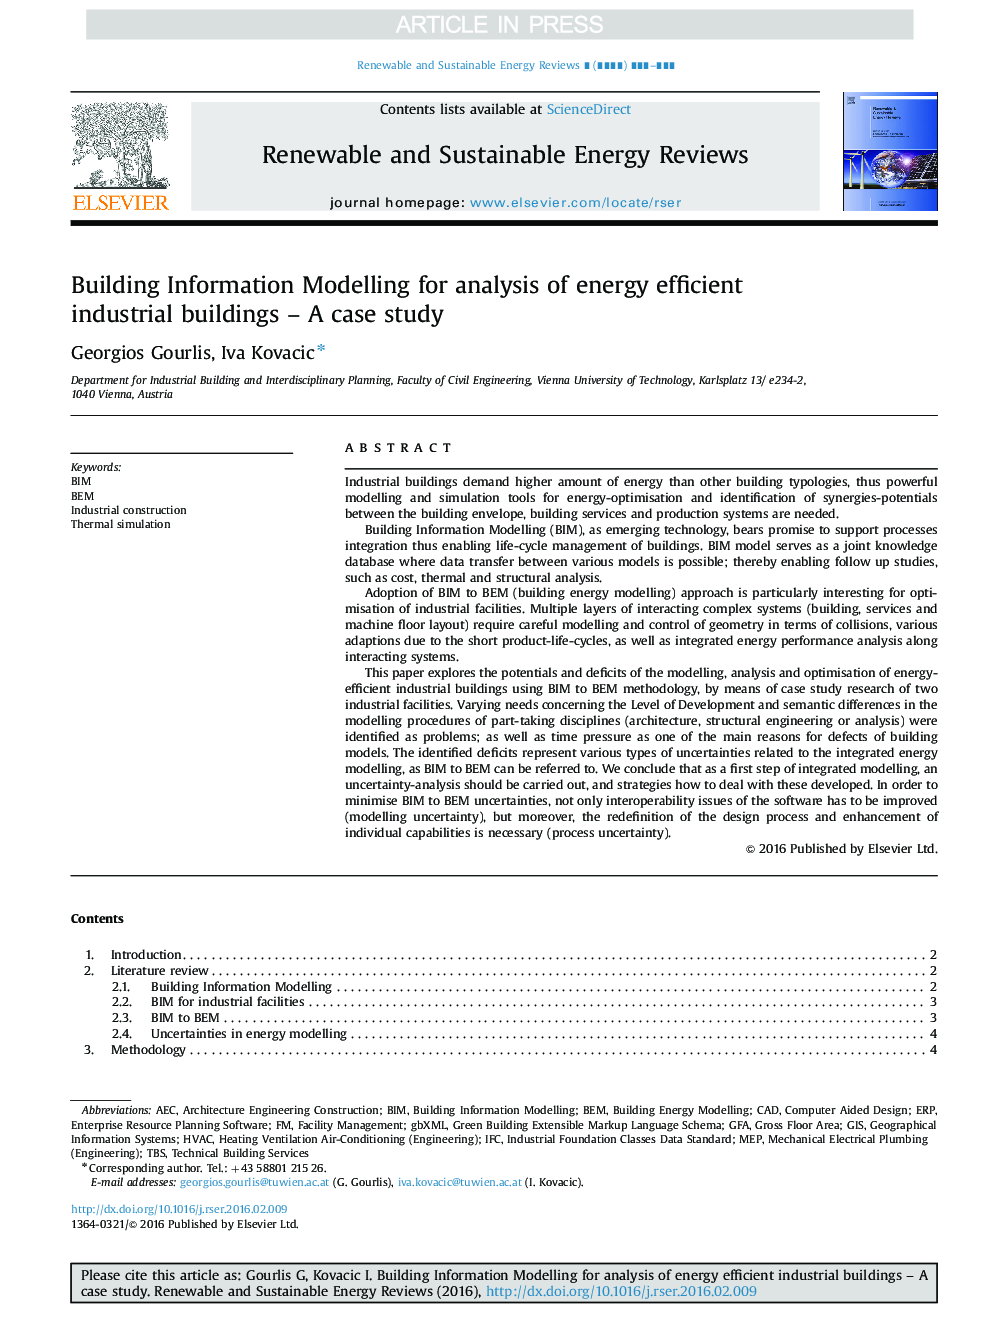 مدل سازی اطلاعات ساختمان برای تجزیه و تحلیل ساختمان های صنعتی کارآمد انرژی - مطالعه موردی 